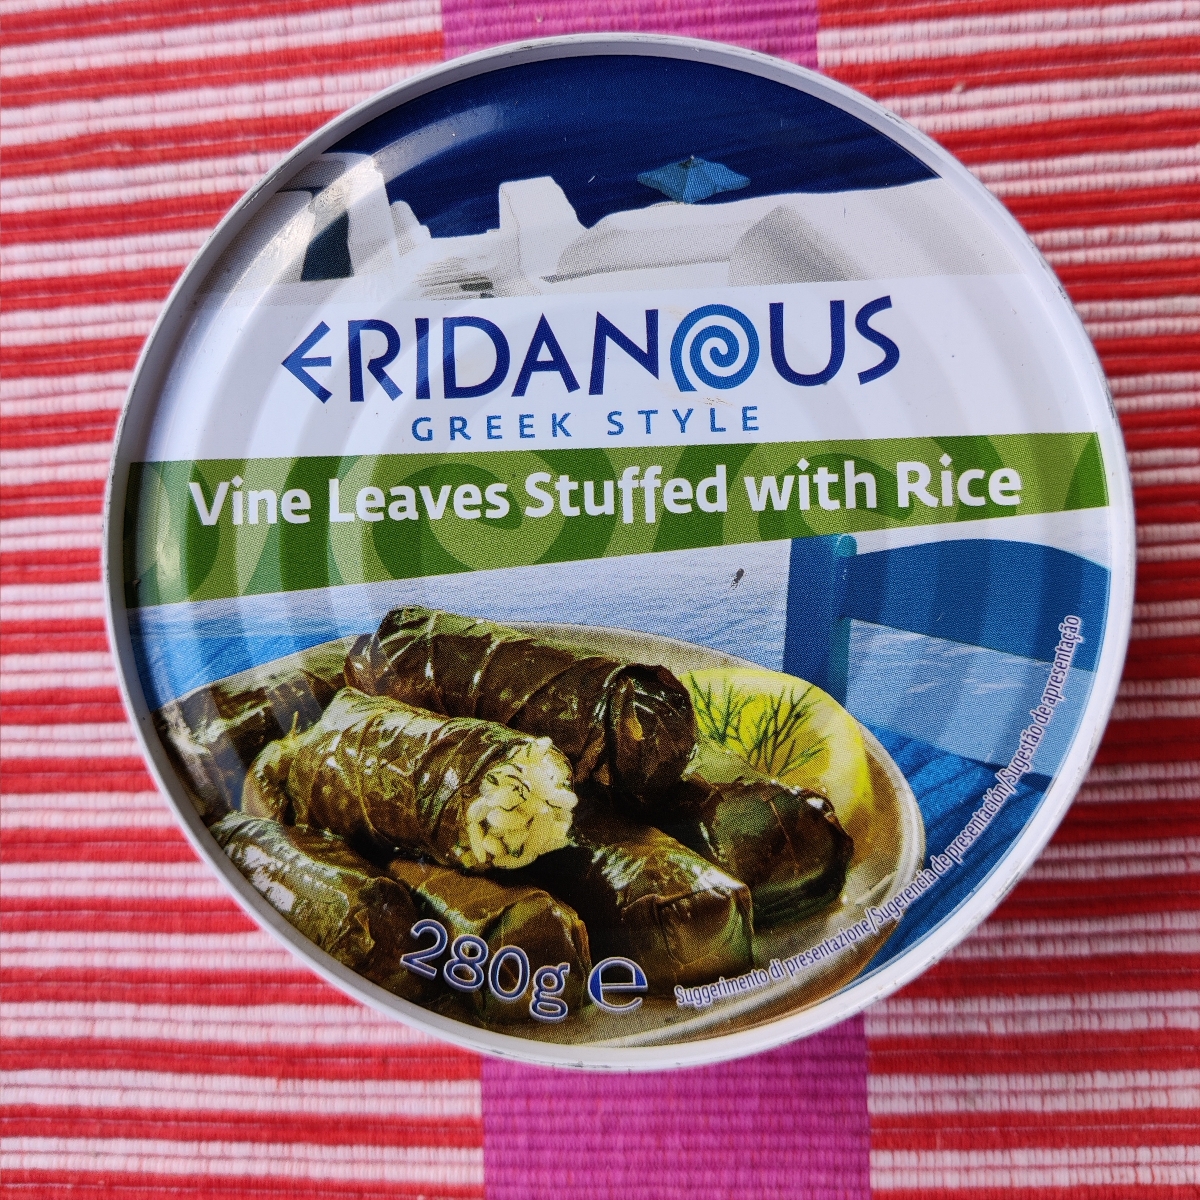 Eridanous Foglie di vite ripiene di riso Reviews | abillion